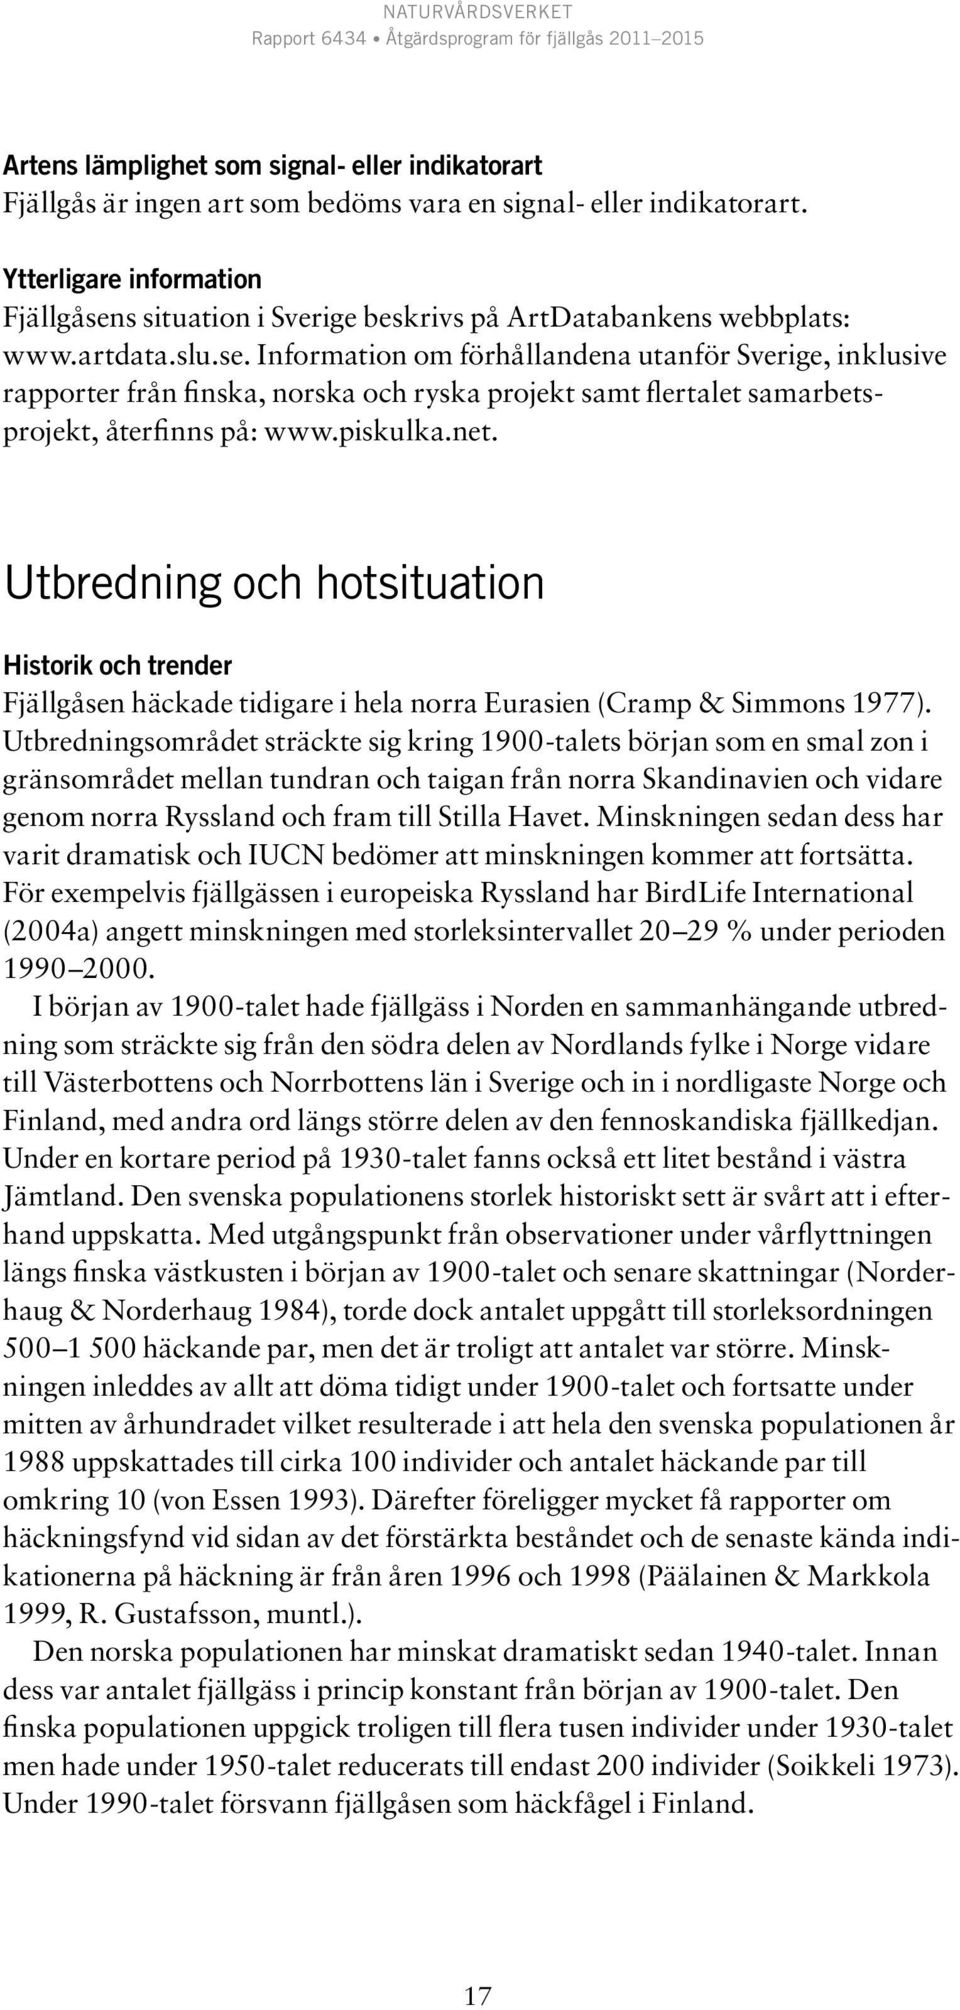 piskulka.net. Utbredning och hotsituation Historik och trender Fjällgåsen häckade tidigare i hela norra Eurasien (Cramp & Simmons 1977).